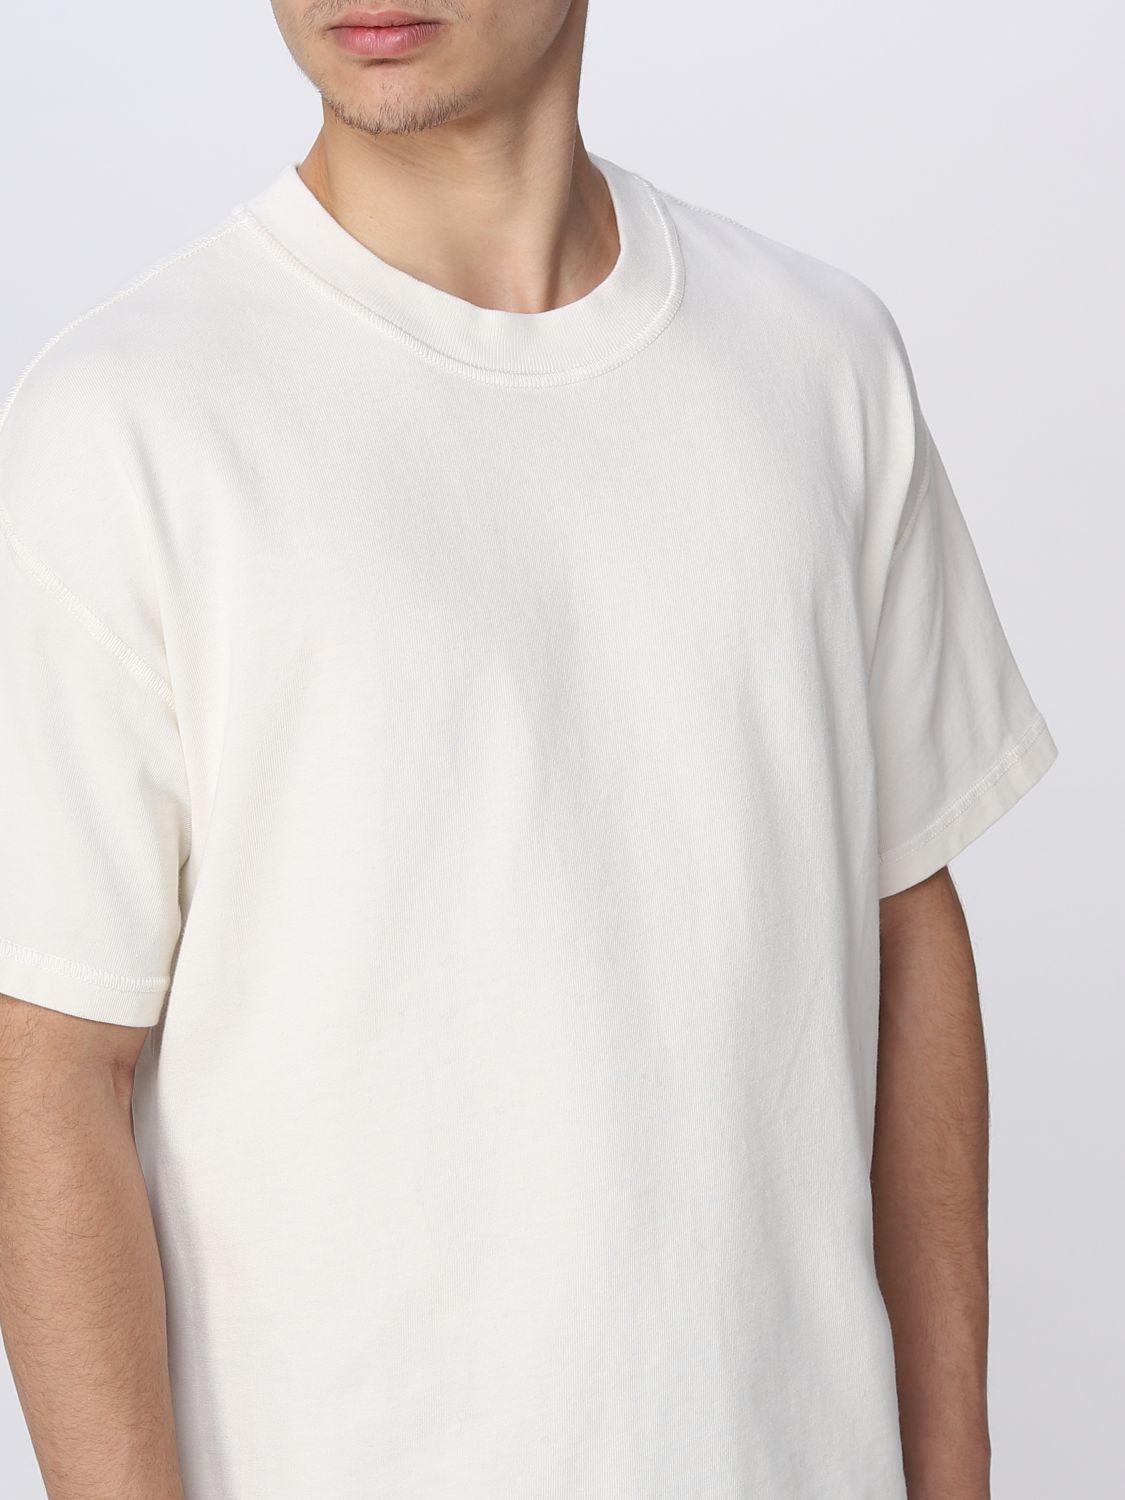 BOTTEGA VENETA: jersey T-shirt - White | Bottega t-shirt 737276VKLZ0 on GIGLIO.COM